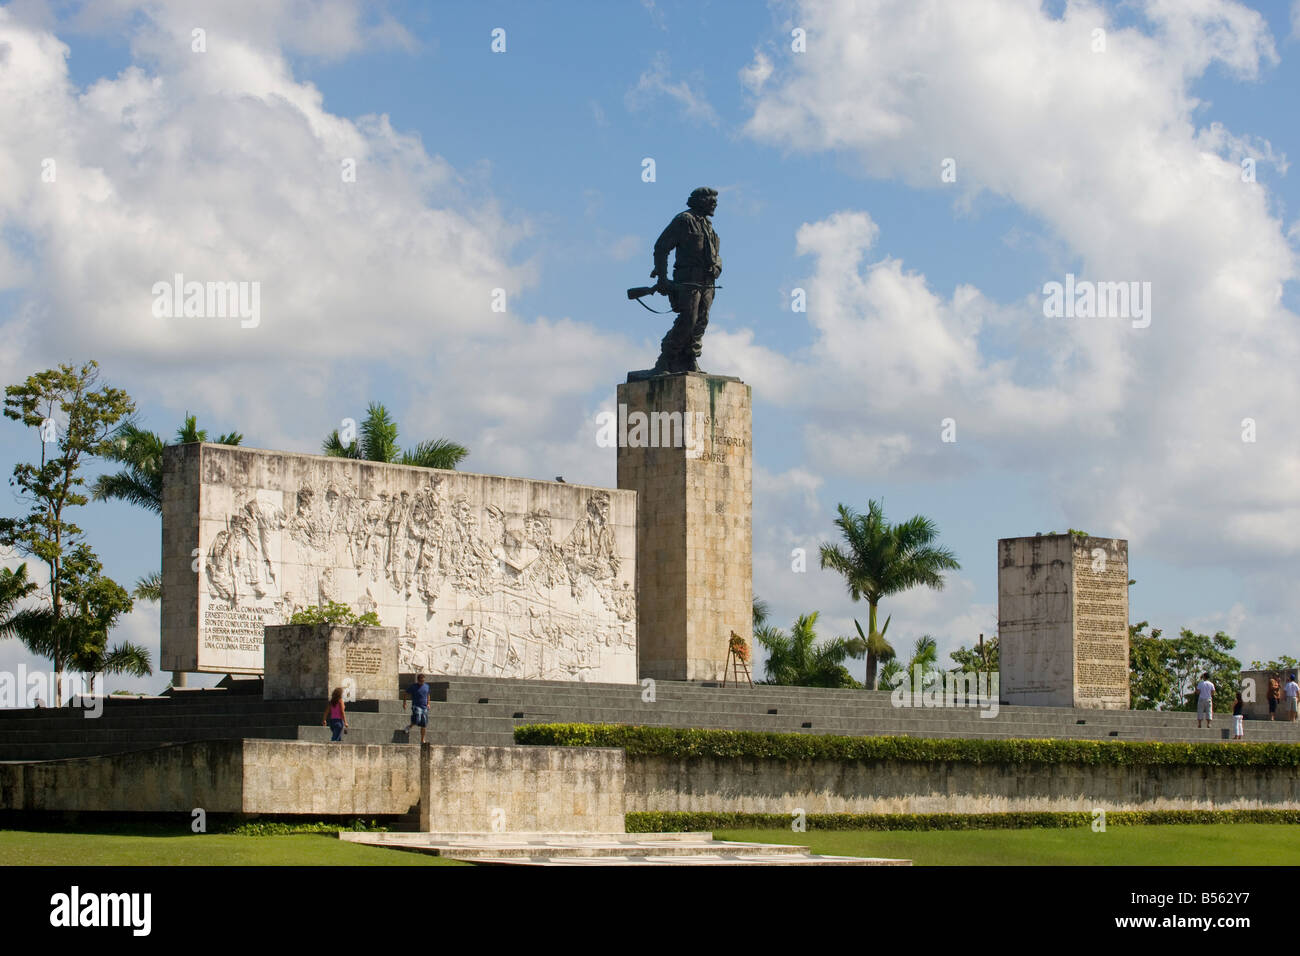 Vista de la plaza de la revolución, mostrando la estatua del Che Guevara Foto de stock